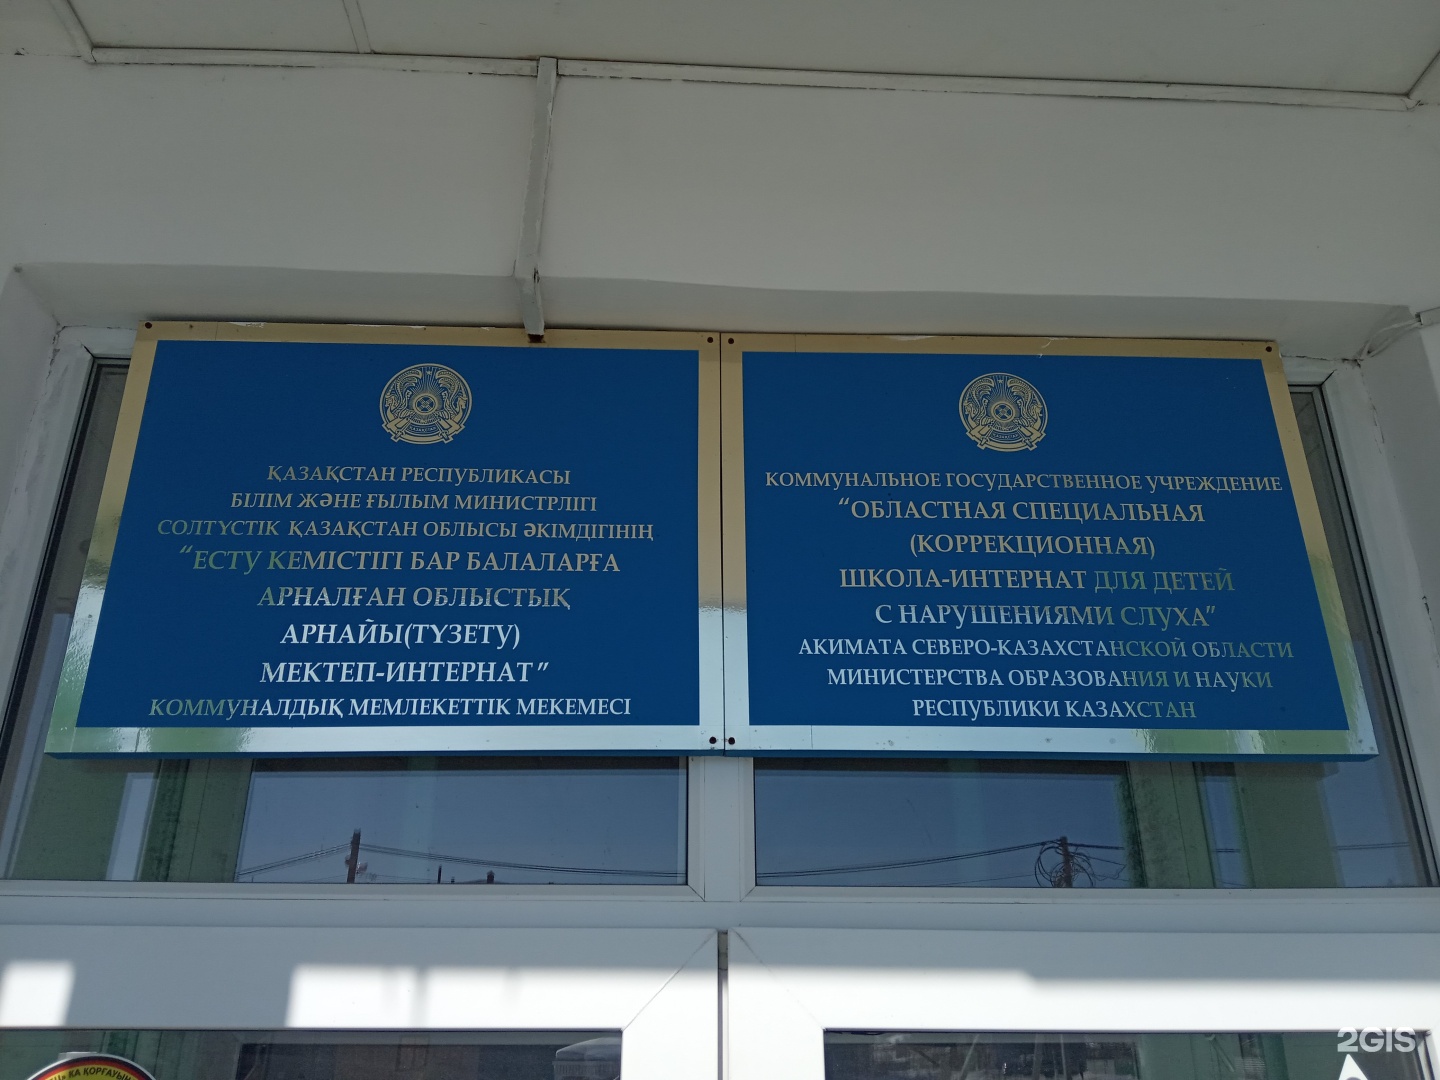 Коммунальное государственное учреждение отдел образования акимата